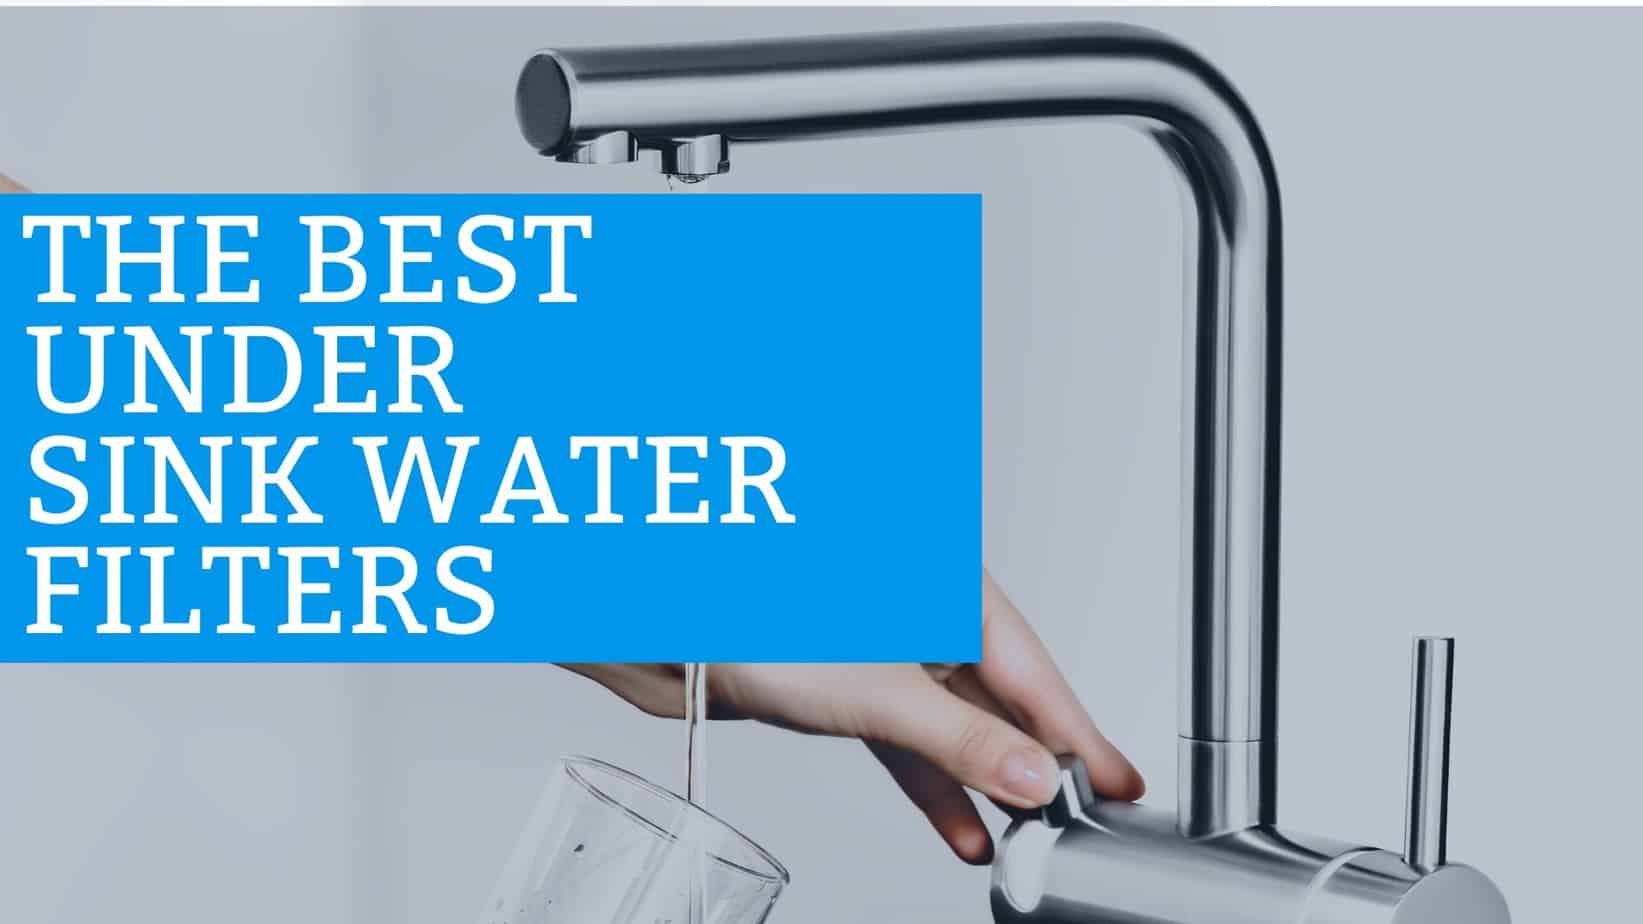 Best Under Sink Water Filter Systems